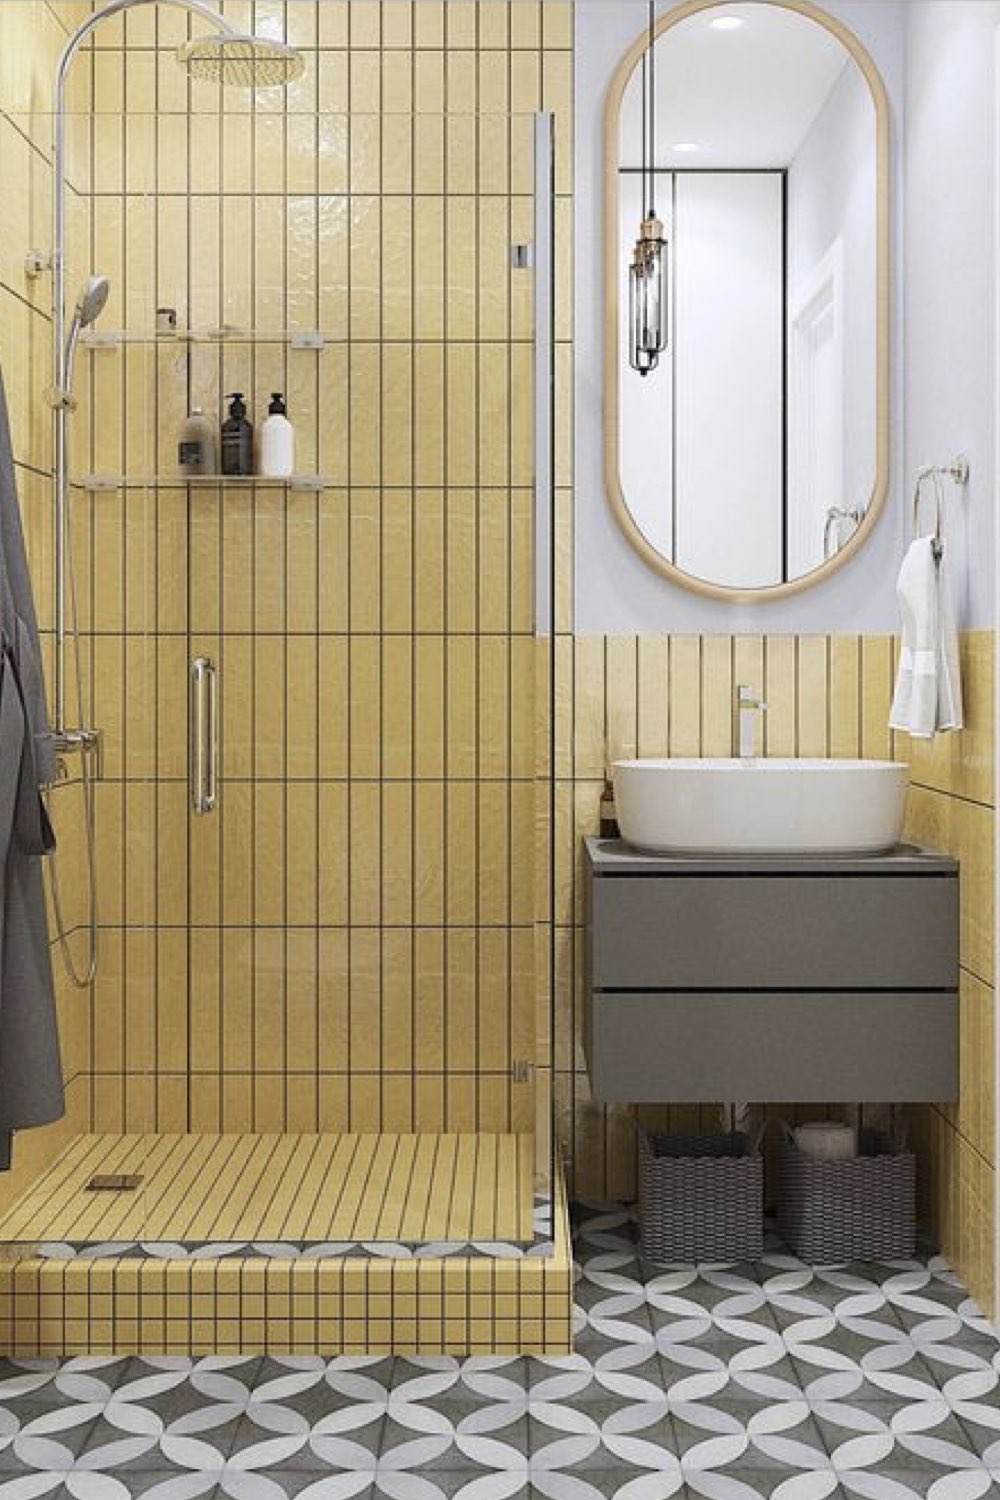 salle de bain douche deco detente jaune pastel carrelage mural carreaux de ciment petit espace meuble vasque gris moderne miroir oval